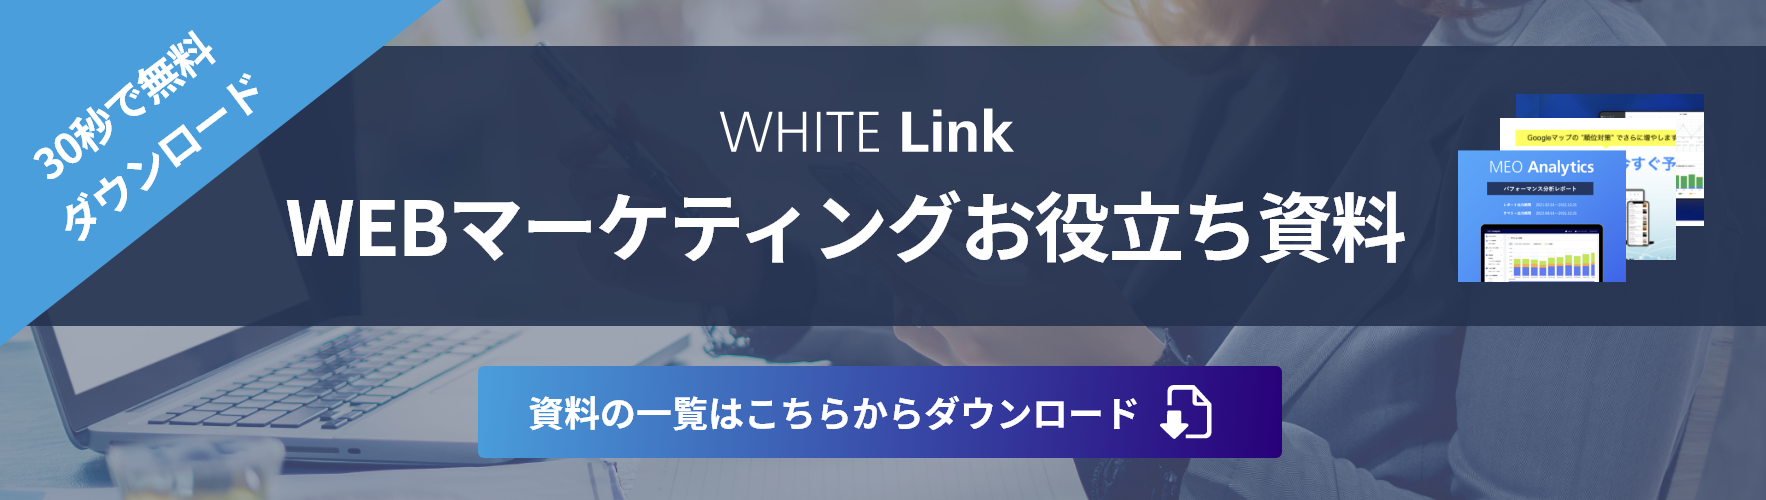 【SEO対策10年の実績】ホワイトリンク 資料ダウンロード